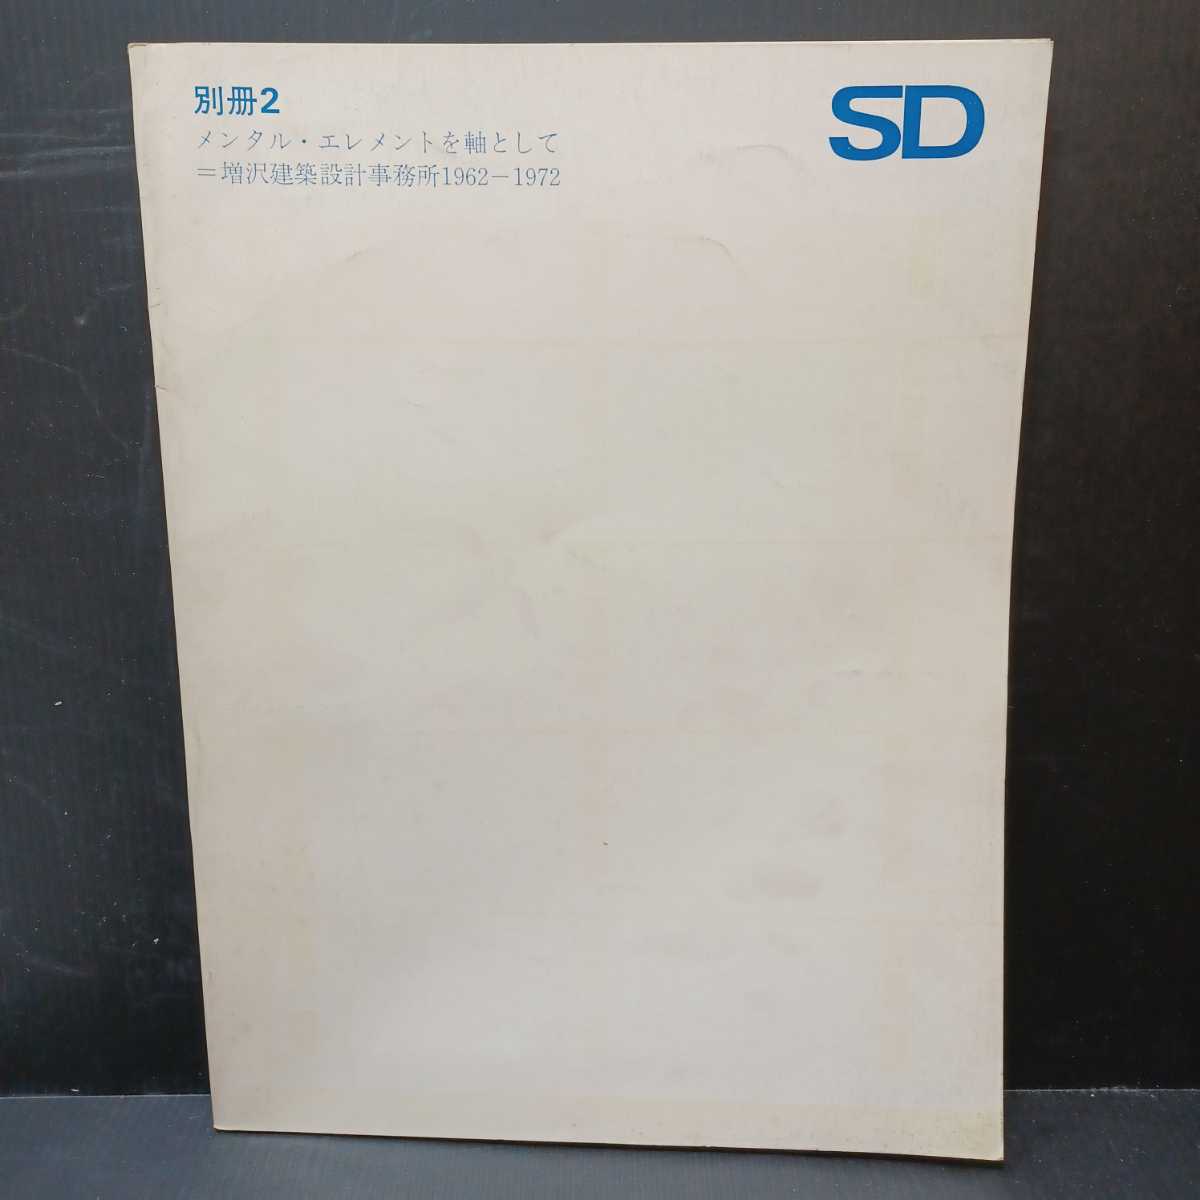 「SD 別冊 2 メンタル・エレメントを軸として: 増沢建築設計事務所1962-1972」_画像1